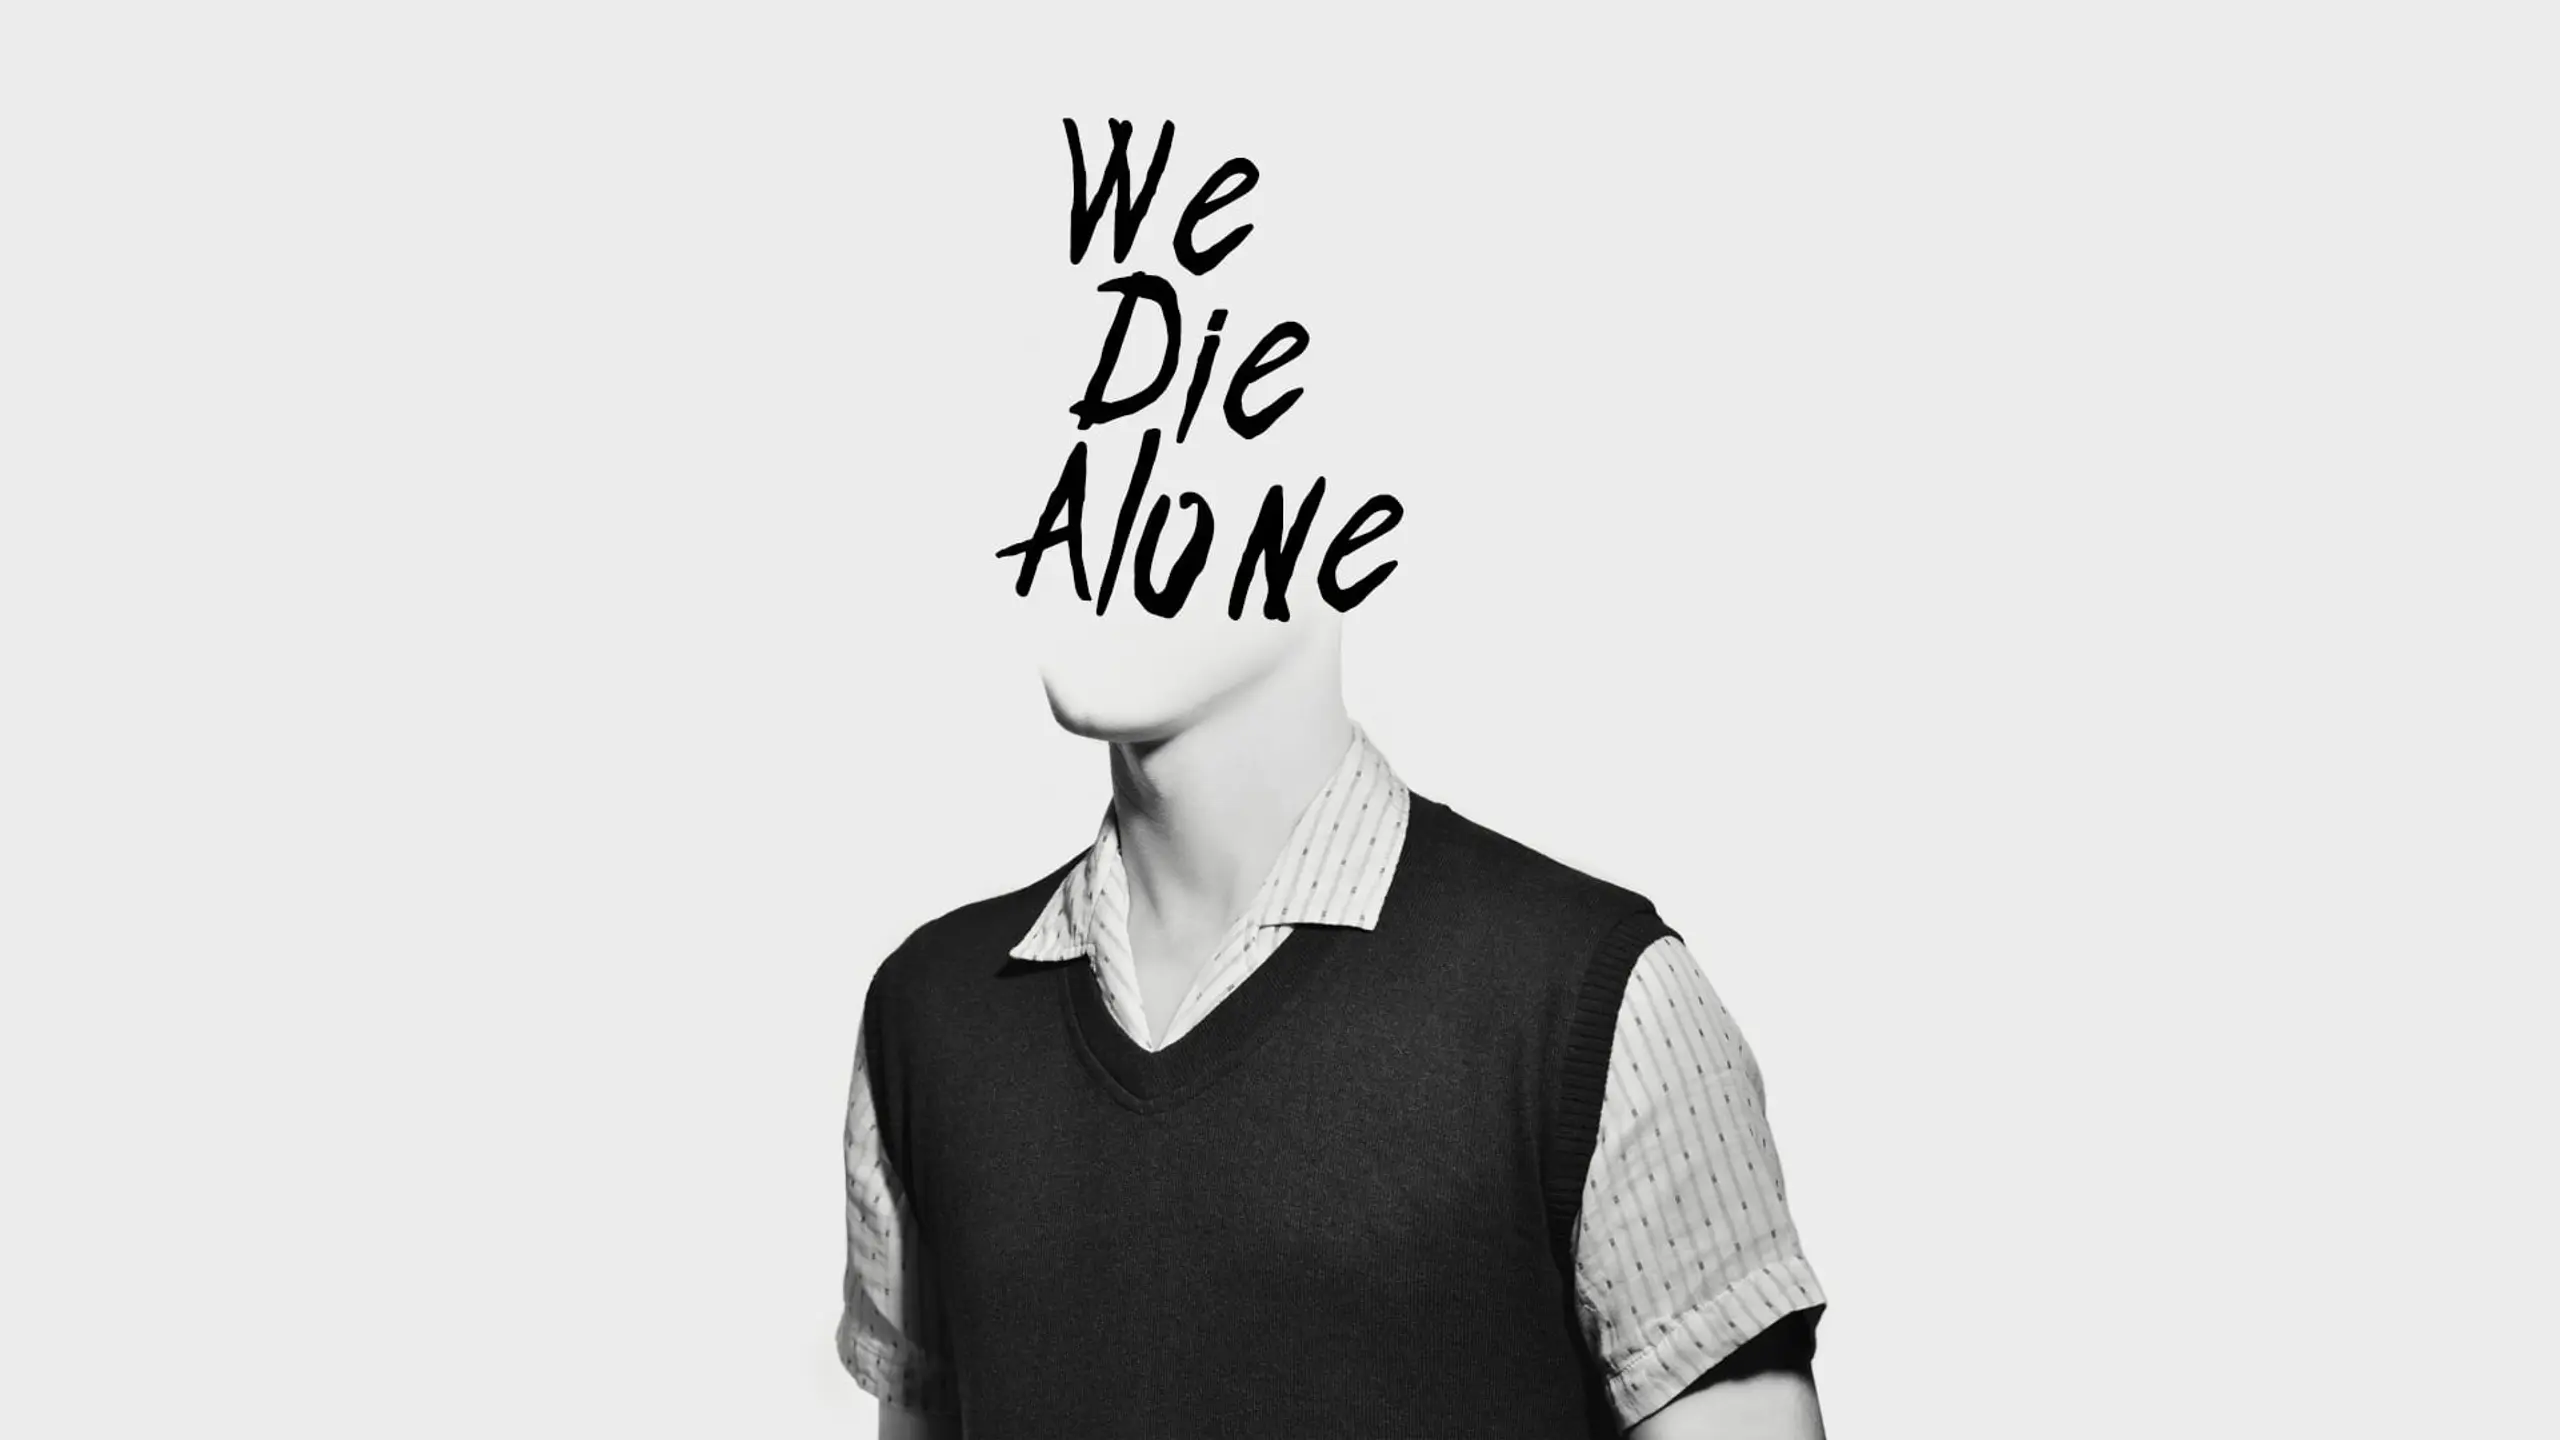 We Die Alone